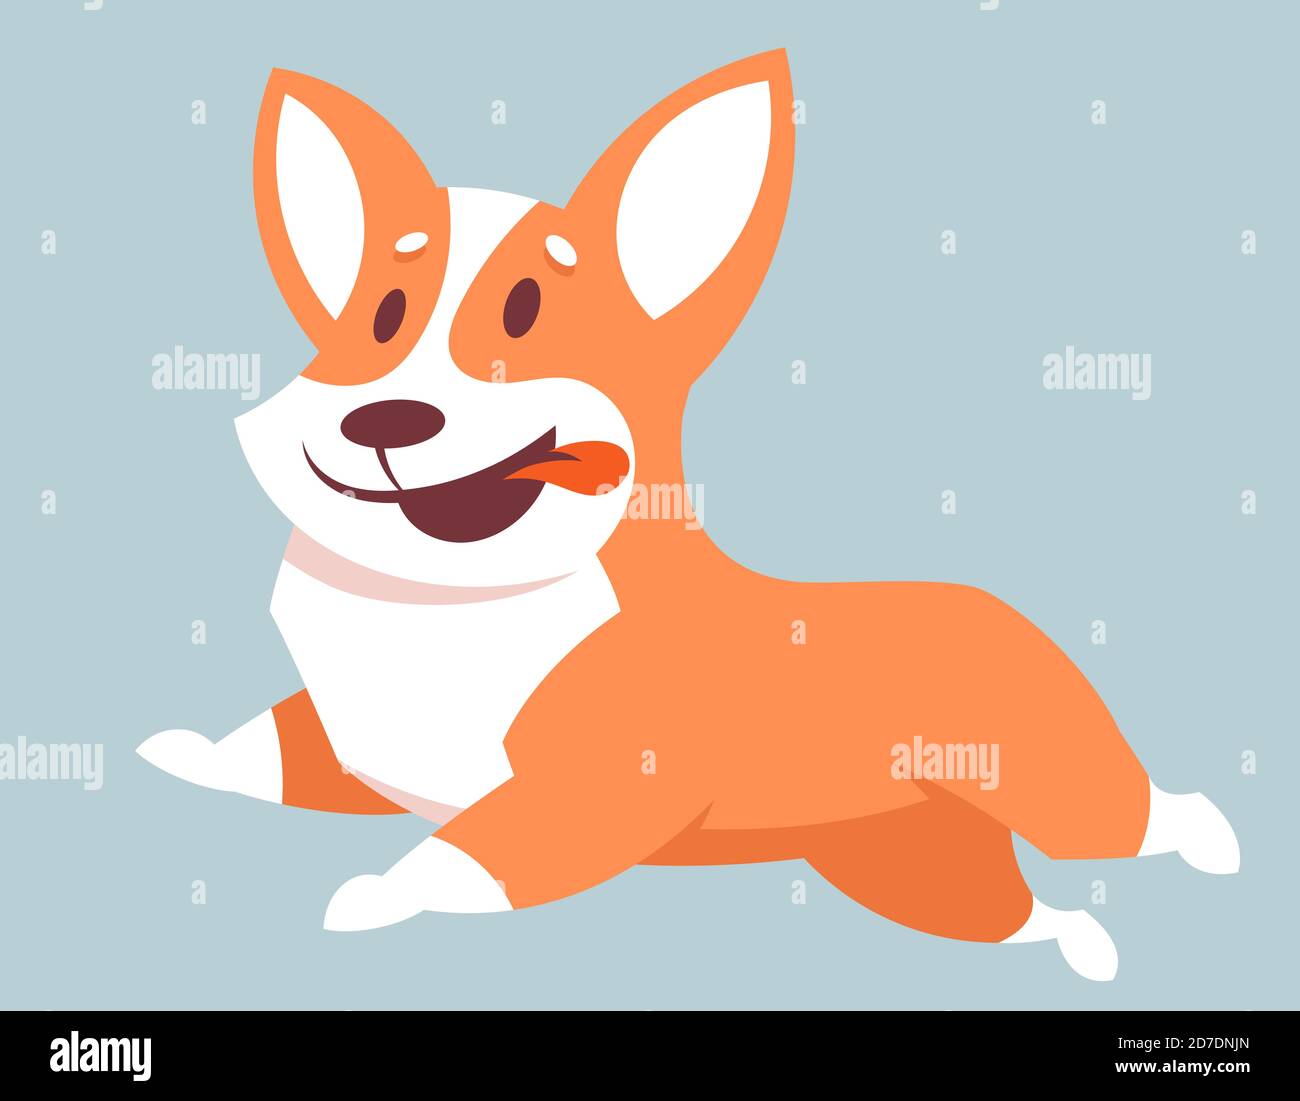 Running Corgi dog. Cute pet in cartoon style. Stock Vector